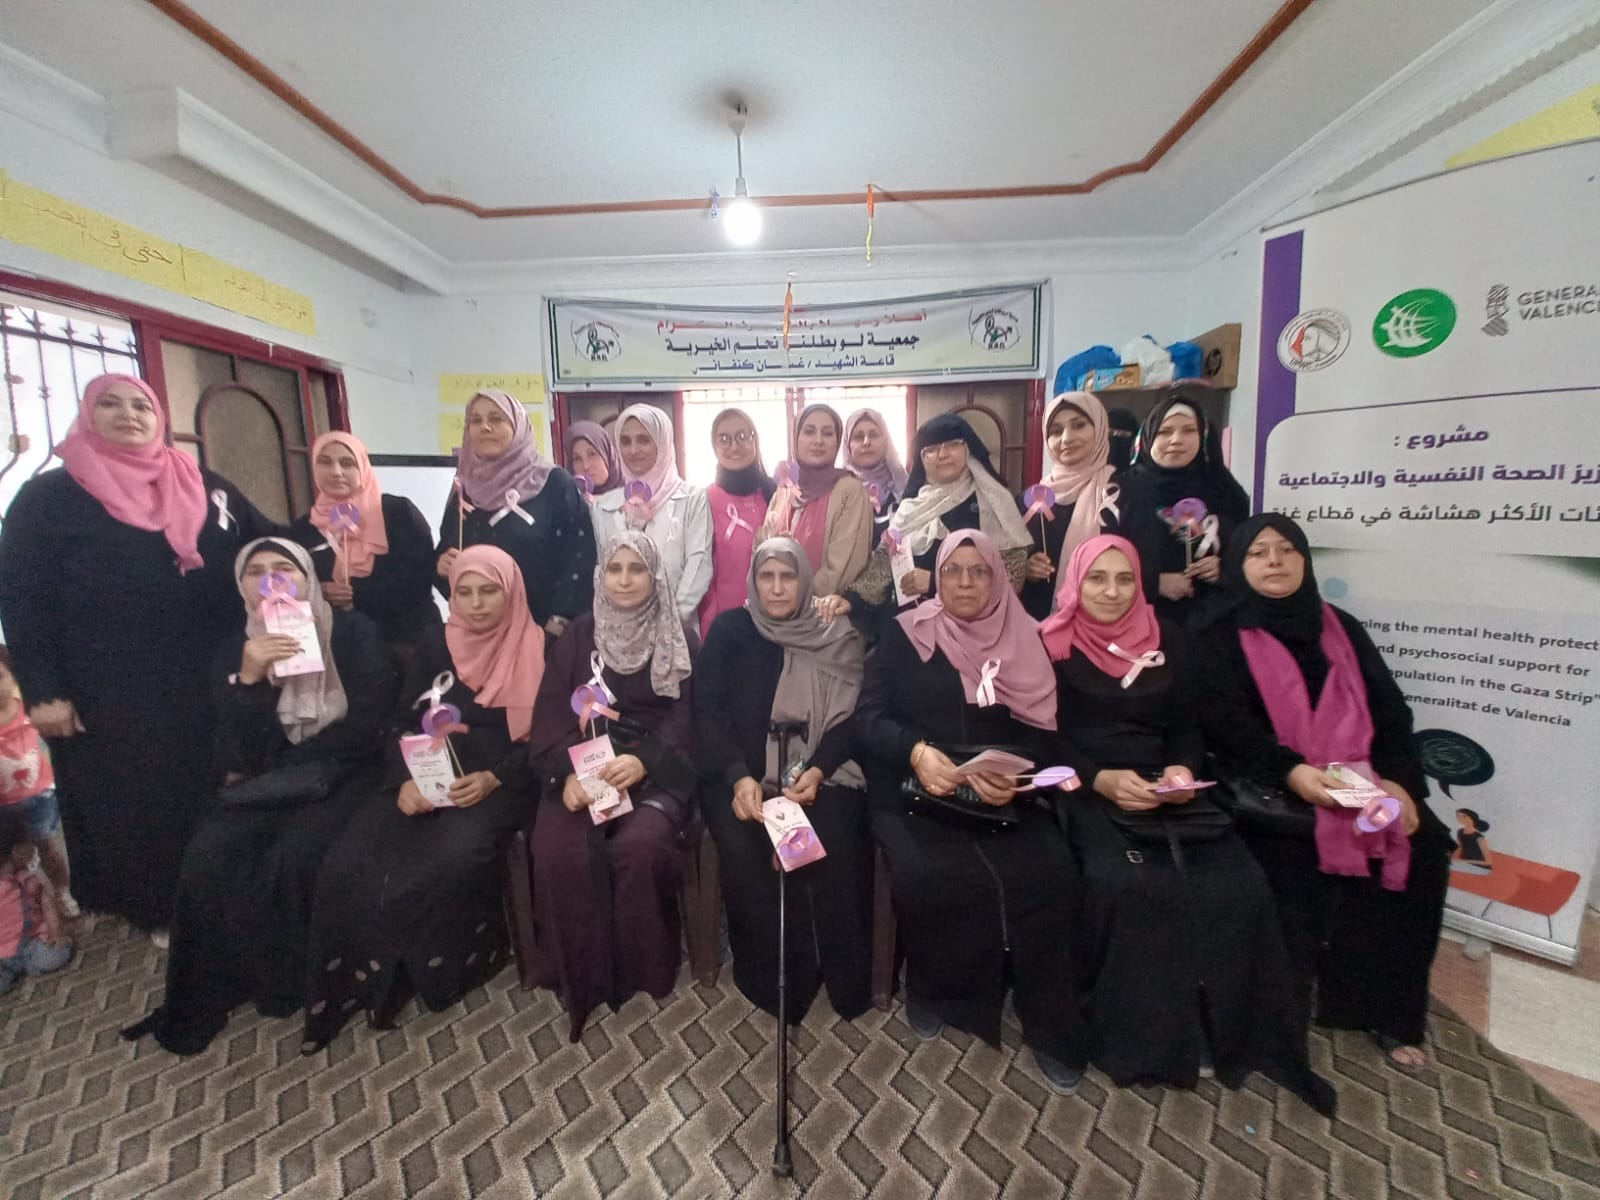 اتحاد لجان المرأة الفلسطينية يطلق حملته التوعوية حول أهمية الكشف المبكر عن سرطان الثدي